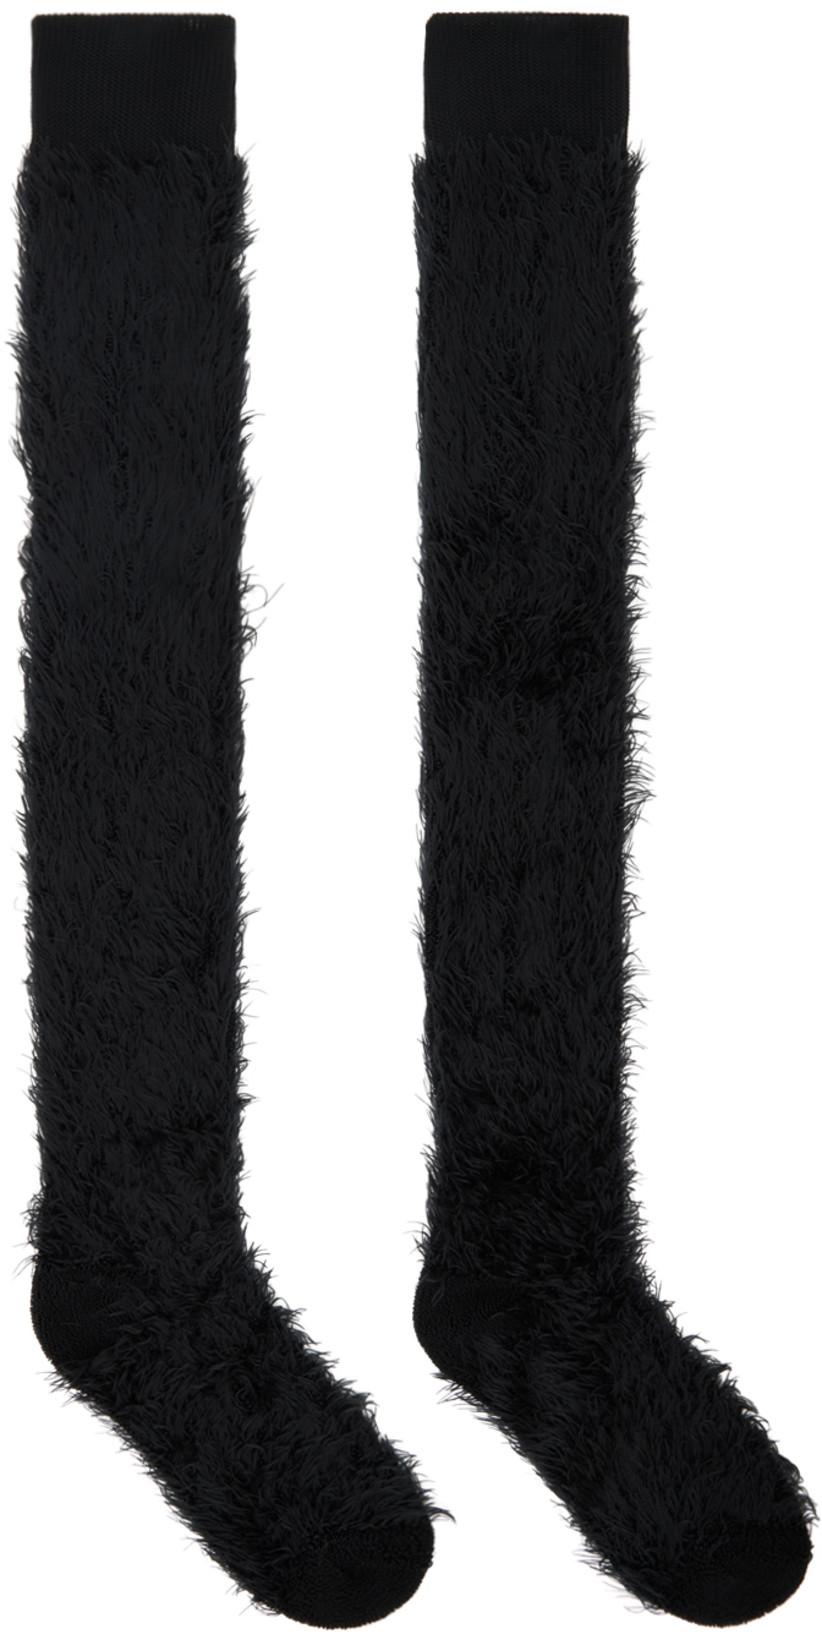 Black Faux-Shearling Socks by SACAI